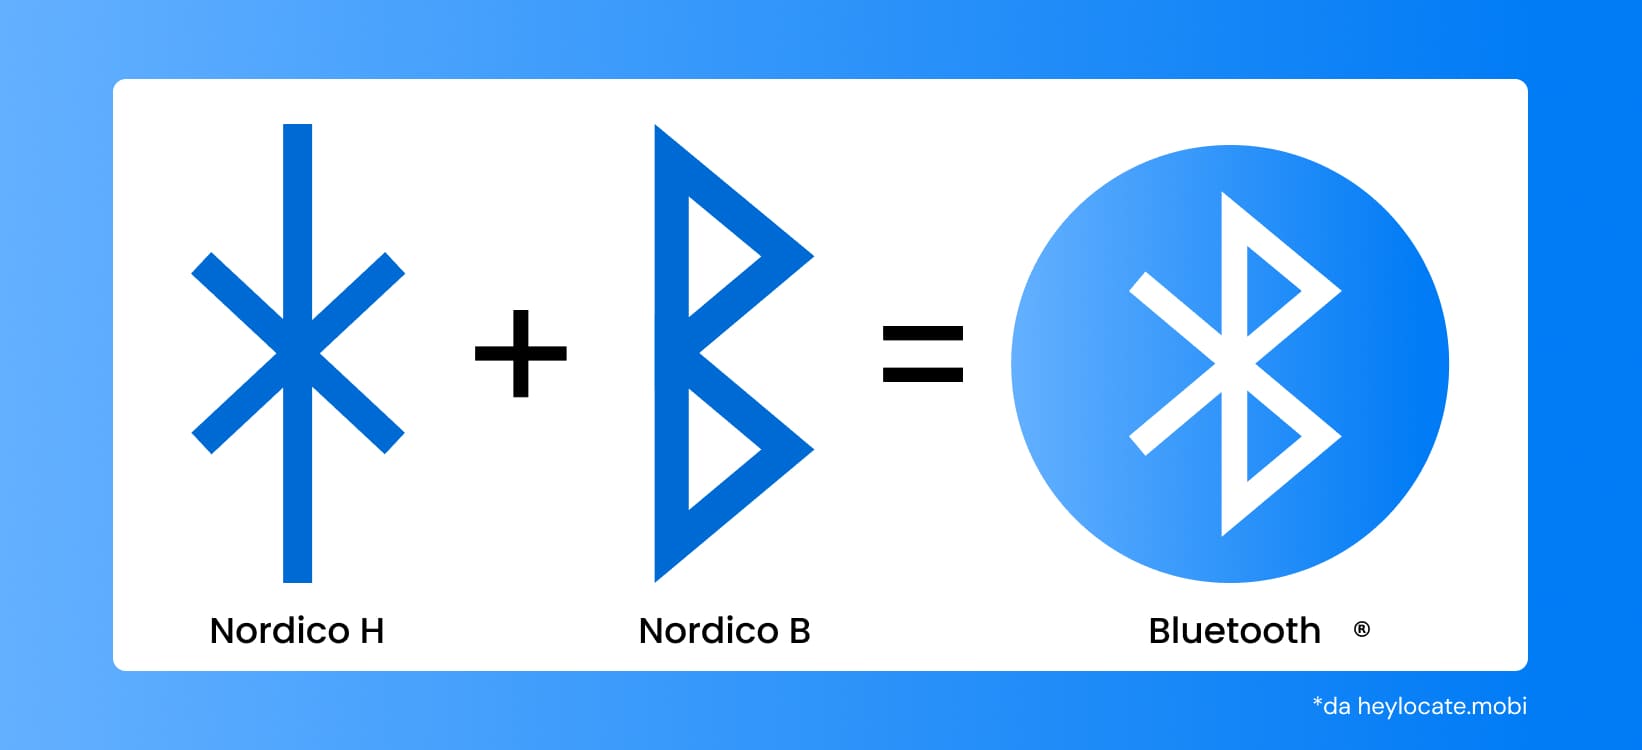 Un'immagine che illustra l'origine del simbolo Bluetooth, che combina le rune scandinave "H" e "B"